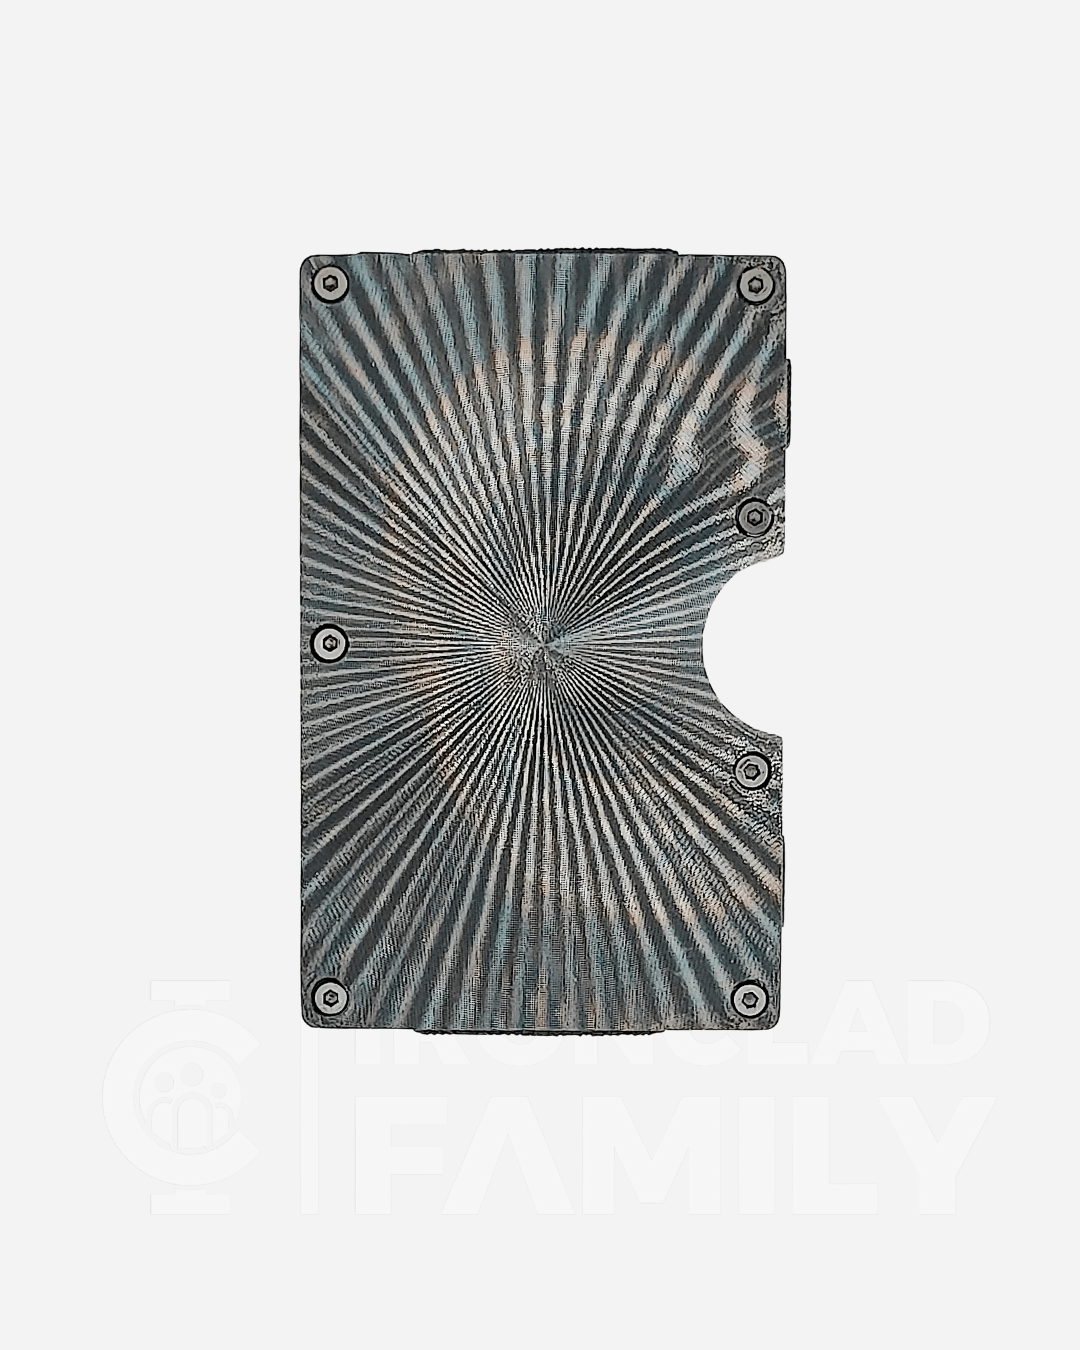 Textured metal RFID blocking wallet featuring a spiral design